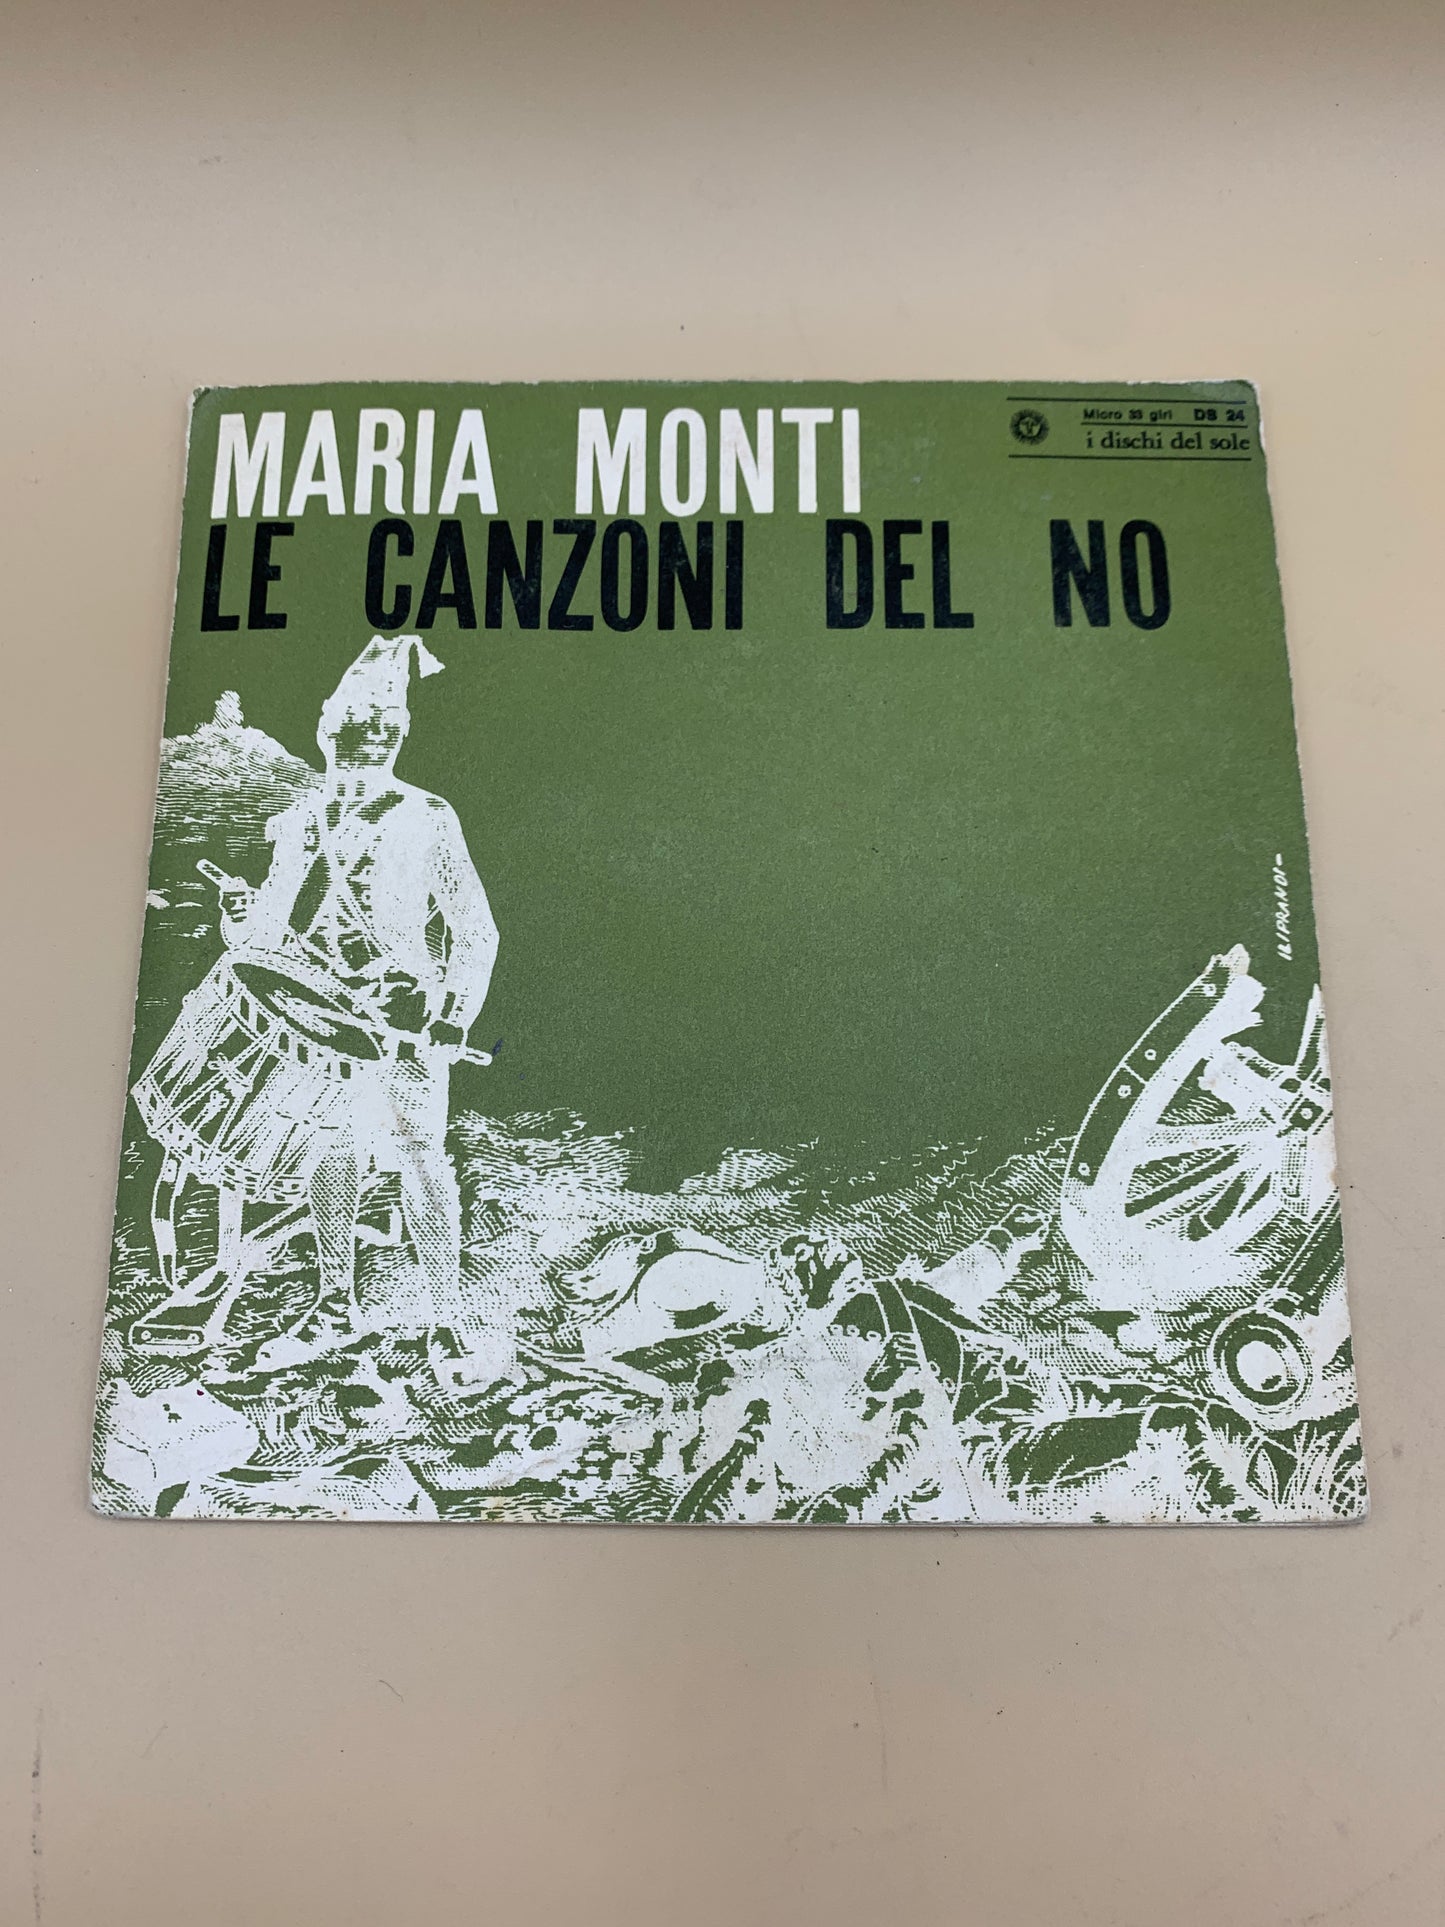 Maria Monti – Die Lieder von No – 45 U/min Vinyl-Schallplatte